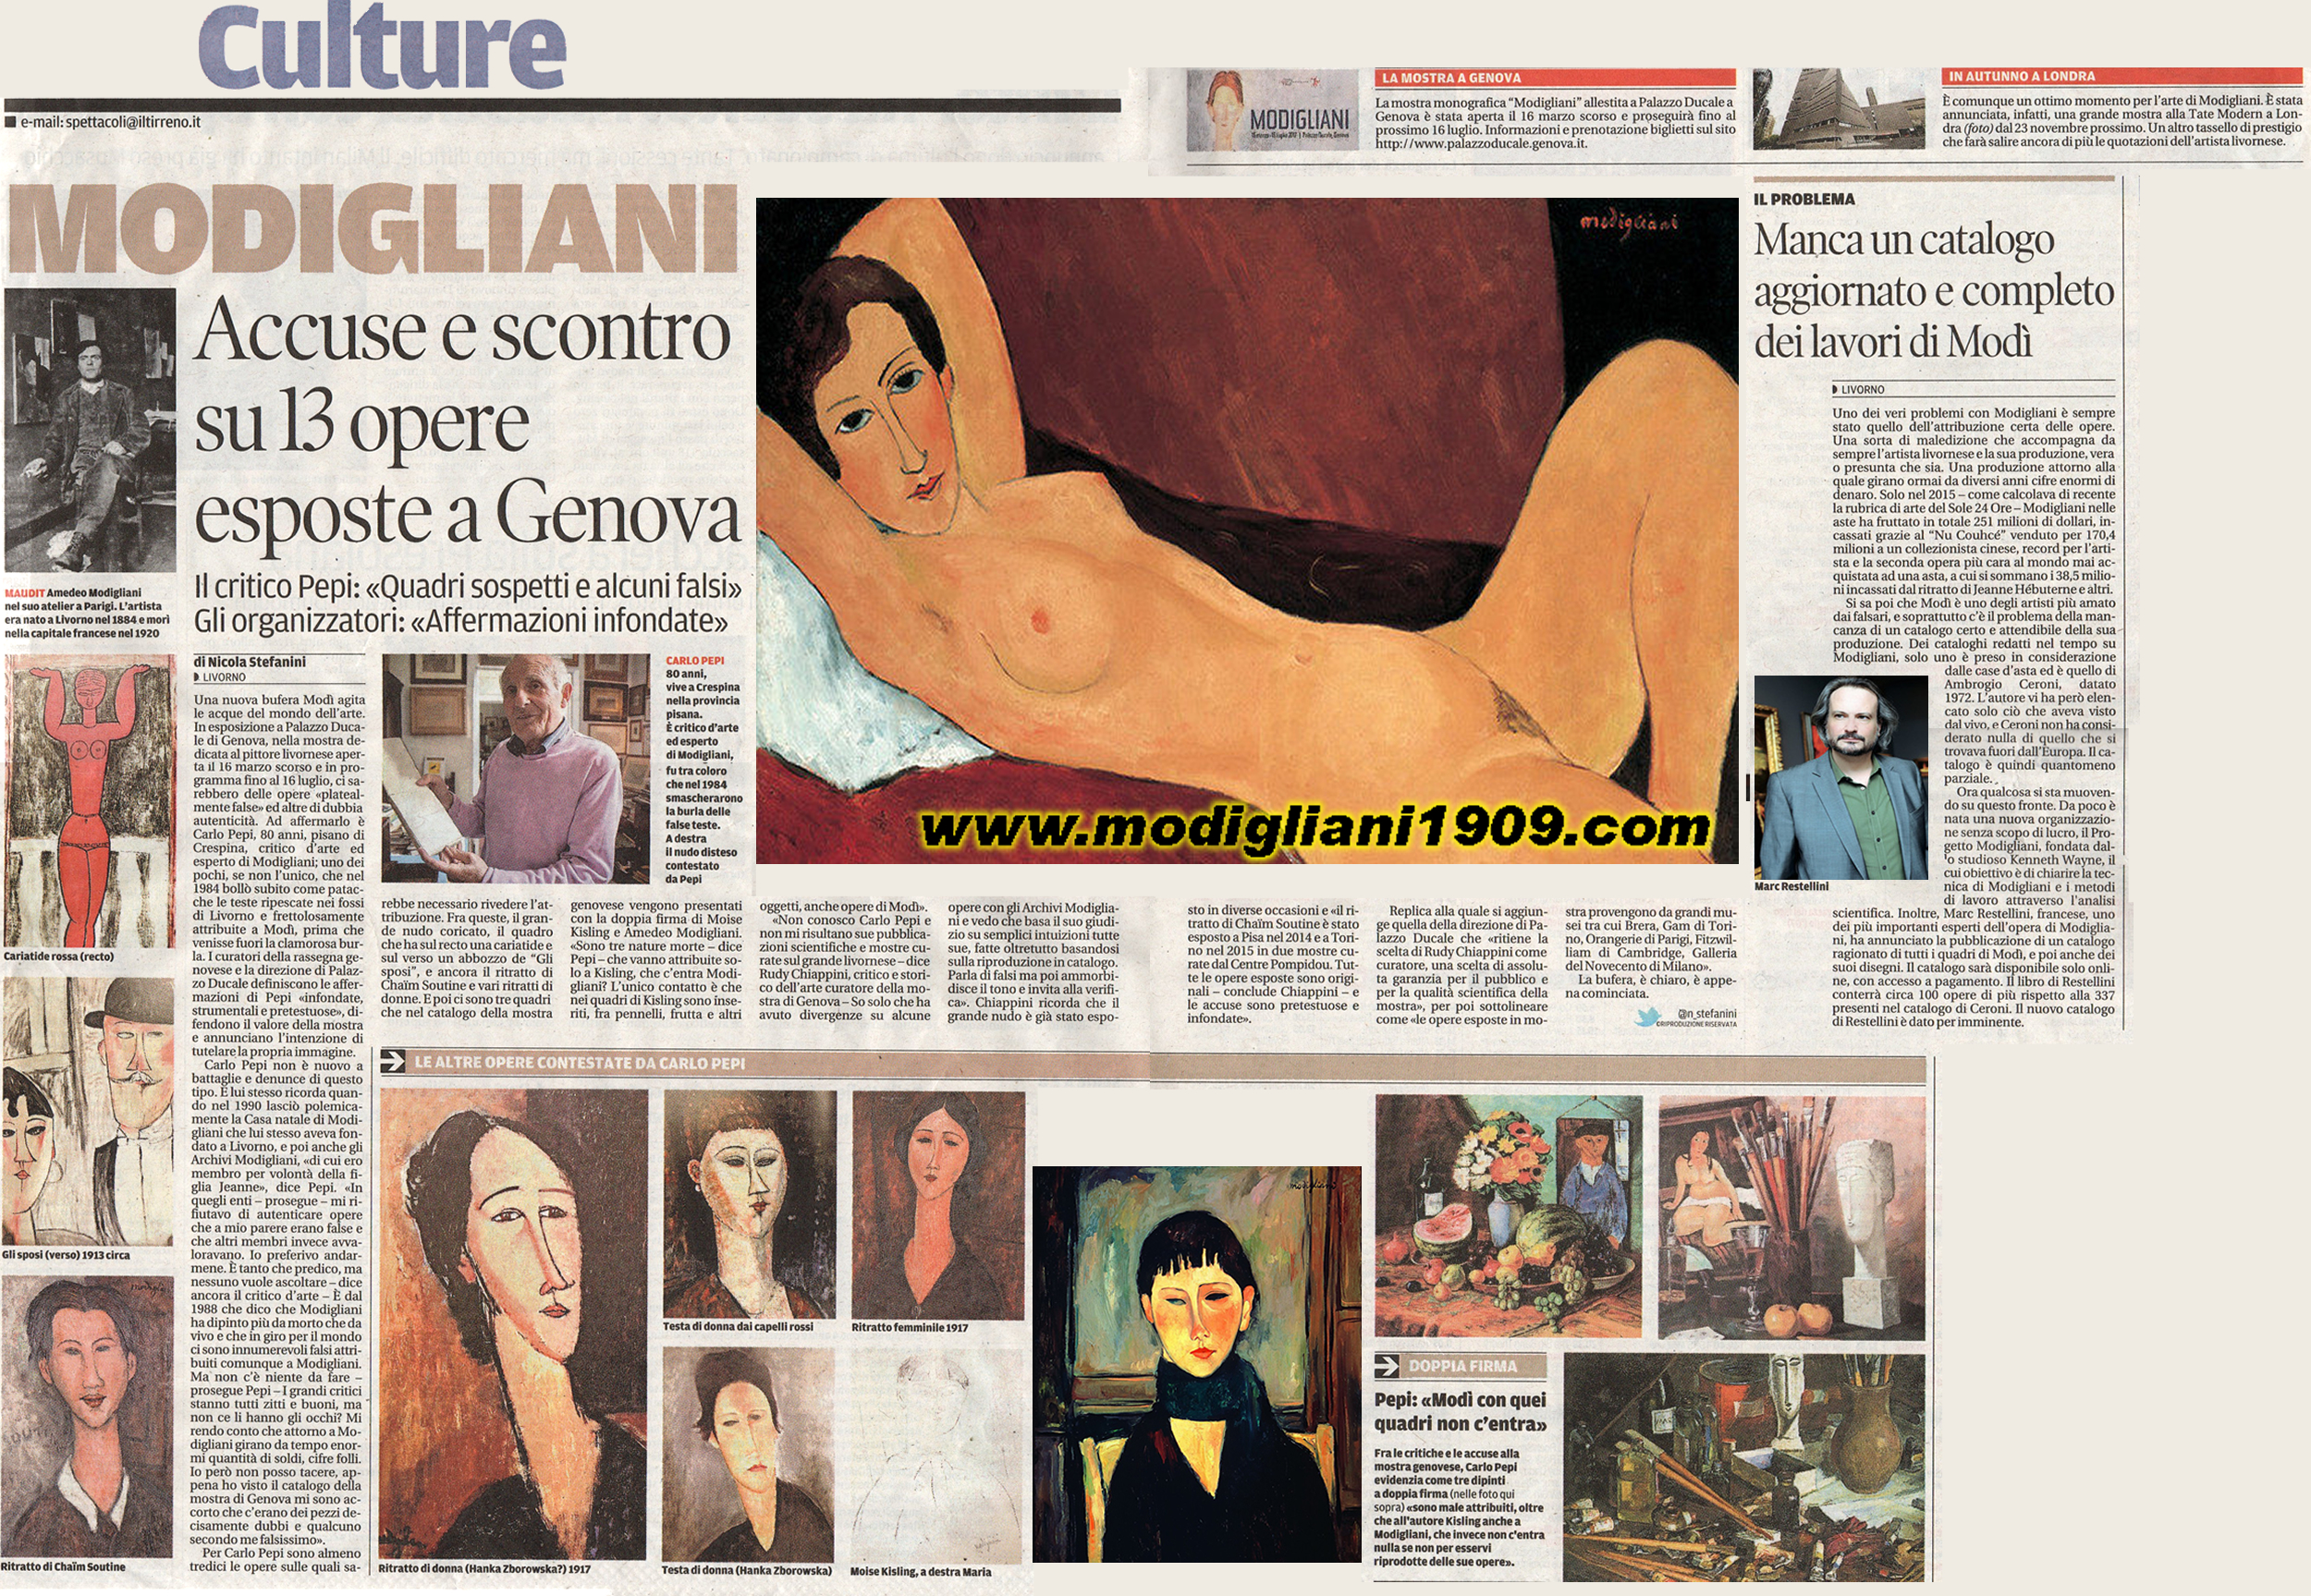 Modigliani accuse e scontro su 13 opere esposte a Genova